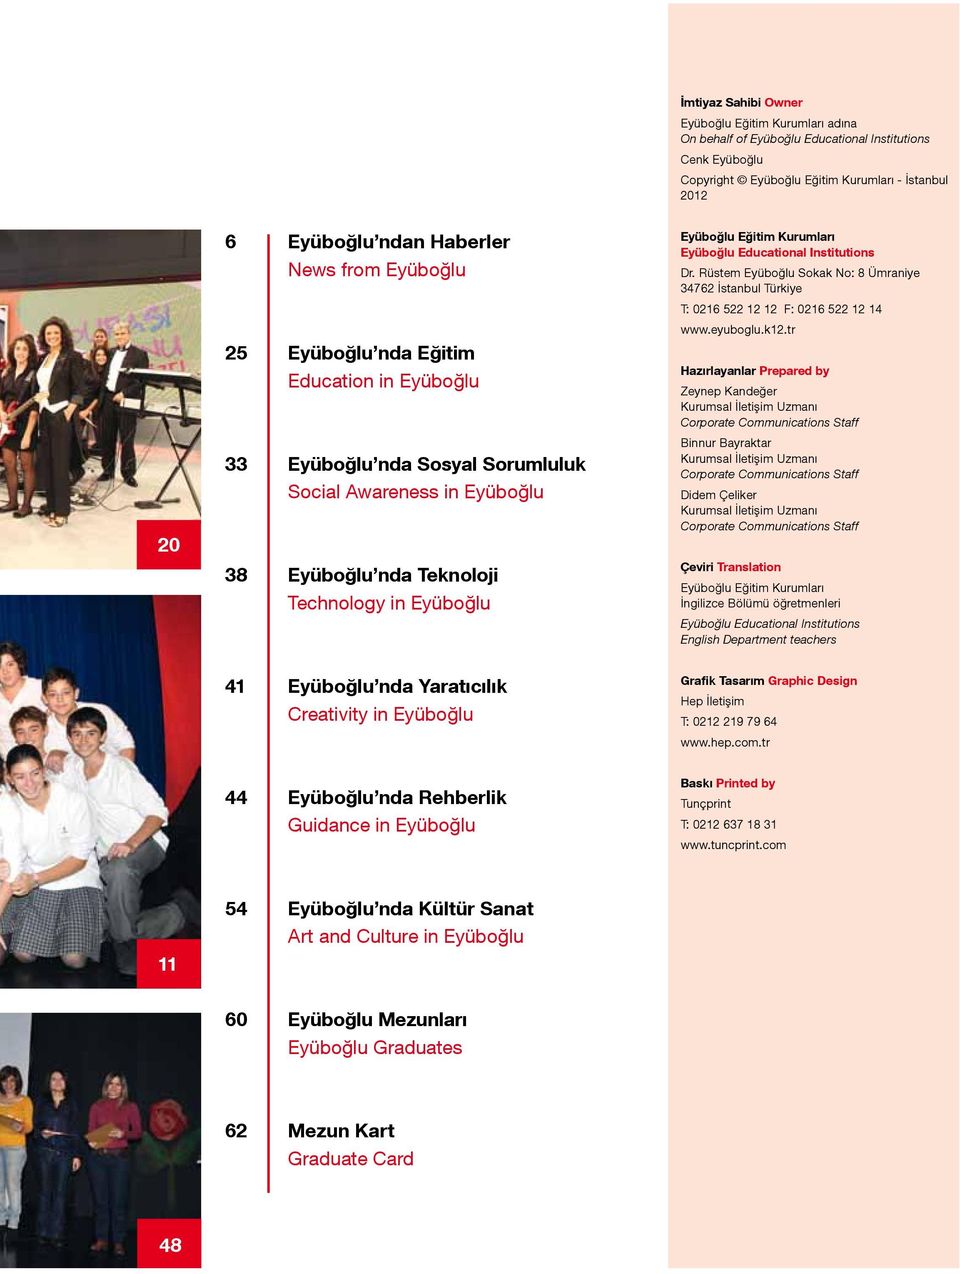 Eyüboğlu Educational Institutions Dr. Rüstem Eyüboğlu Sokak No: 8 Ümraniye 34762 İstanbul Türkiye T: 0216 522 12 12 F: 0216 522 12 14 www.eyuboglu.k12.